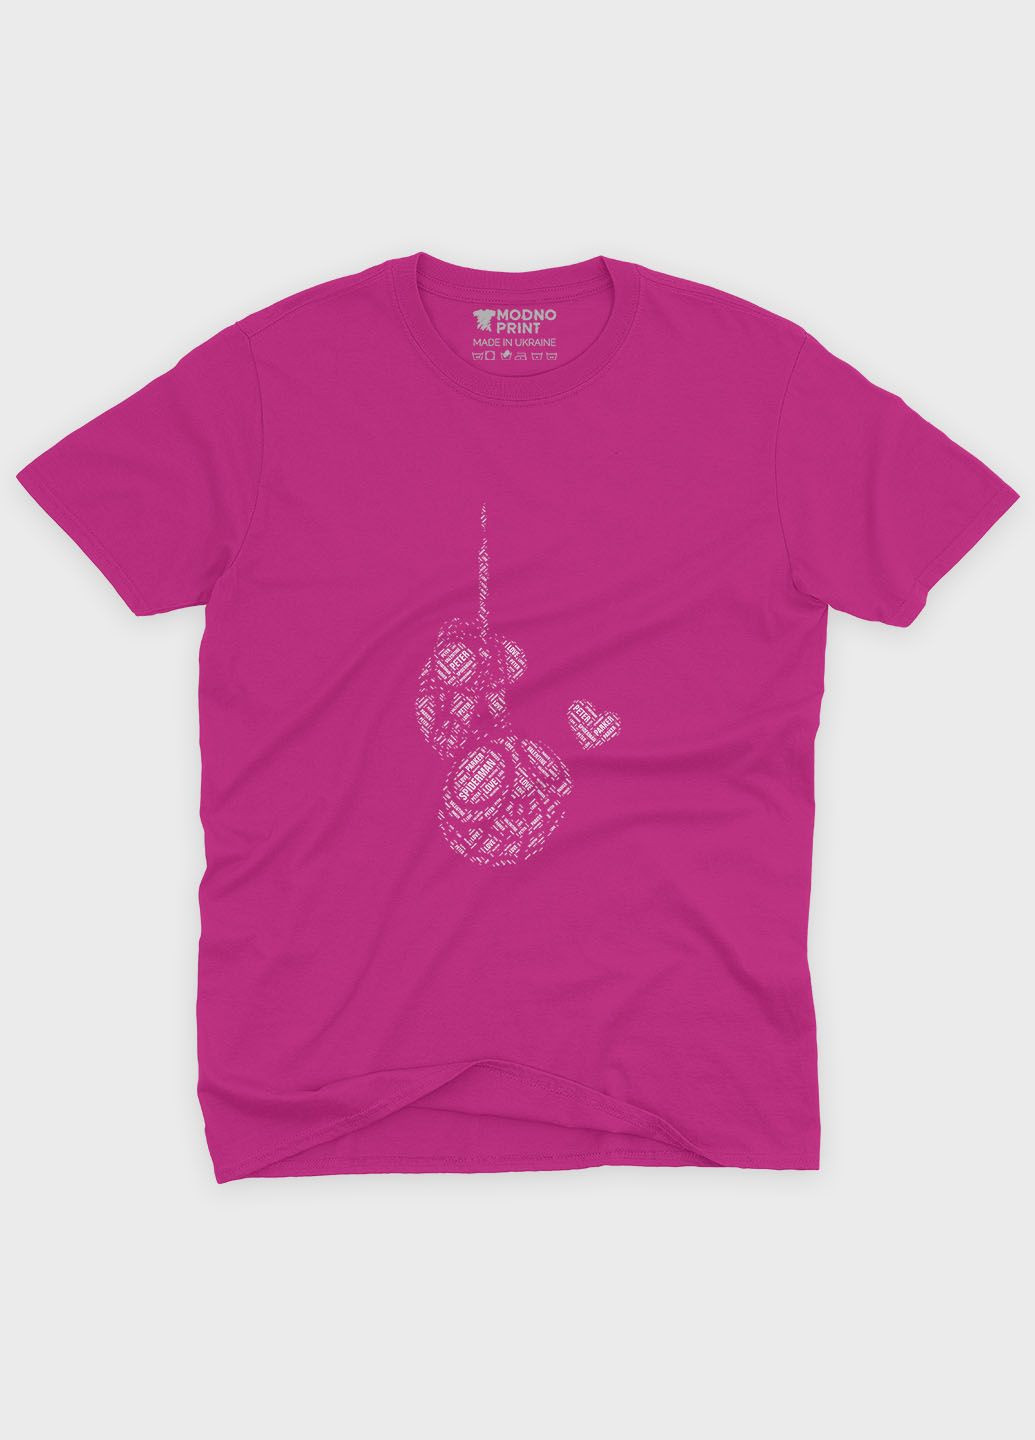 Розовая демисезонная футболка для девочки с принтом супергероя - человек-паук (ts001-1-fuxj-006-014-001-g) Modno